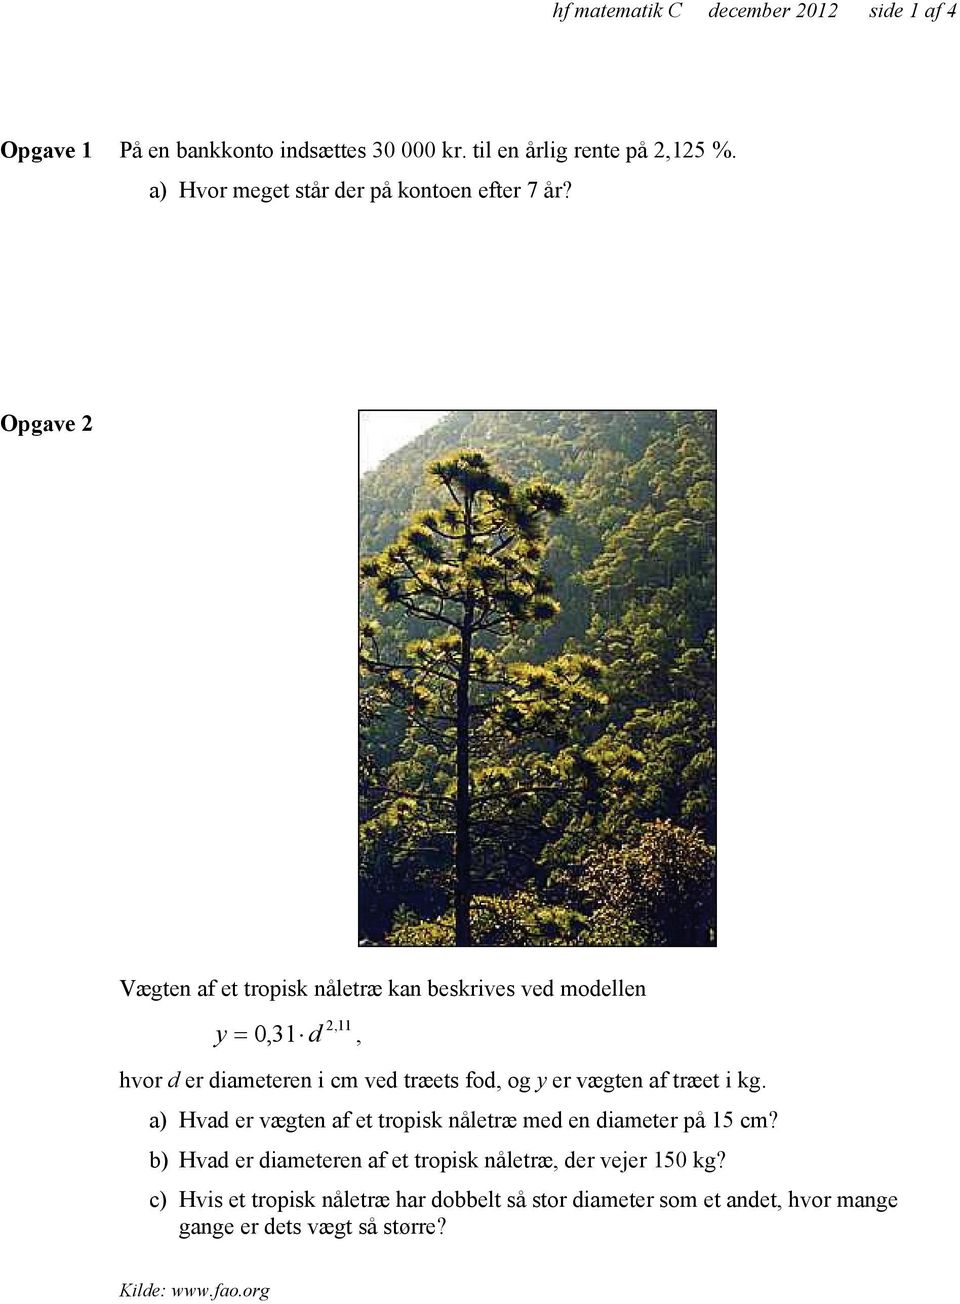 Opgave 2 Vægten af et tropisk nåletræ kan beskrives ved modellen y 2,11 = 0,31 d, hvor d er diameteren i cm ved træets fod, og y er vægten af